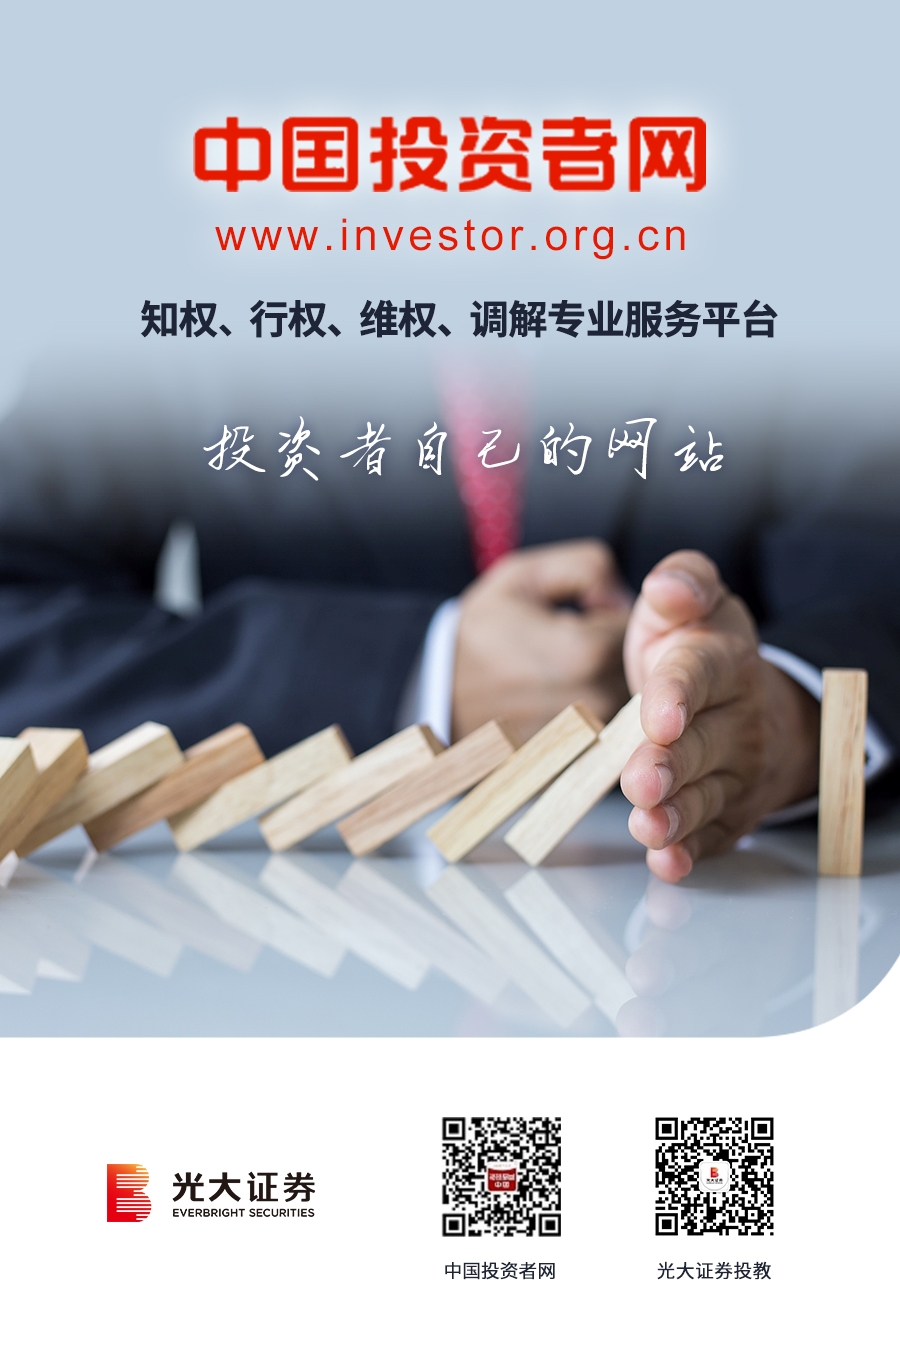 中国投资者网 知权、行权、维权、调解专业服务平台